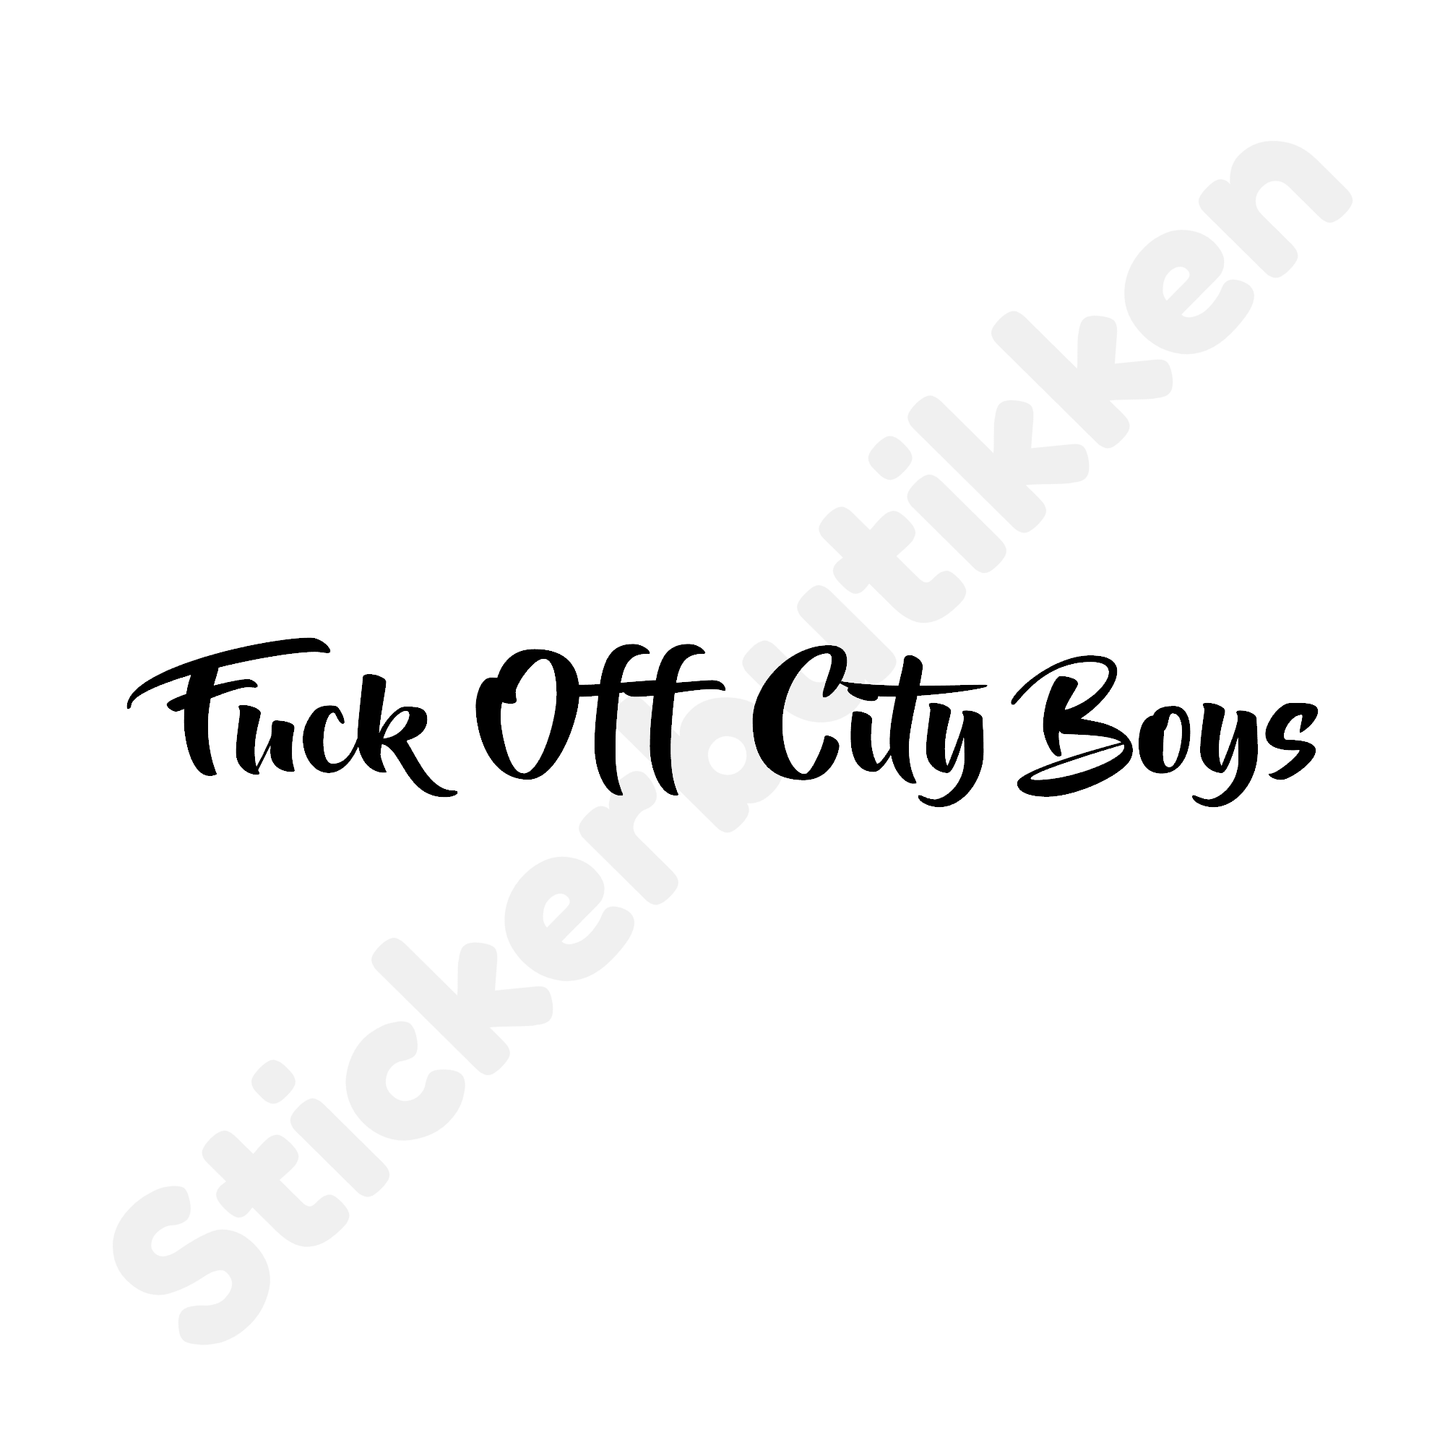 Fuck Off City Boys Streamer #4